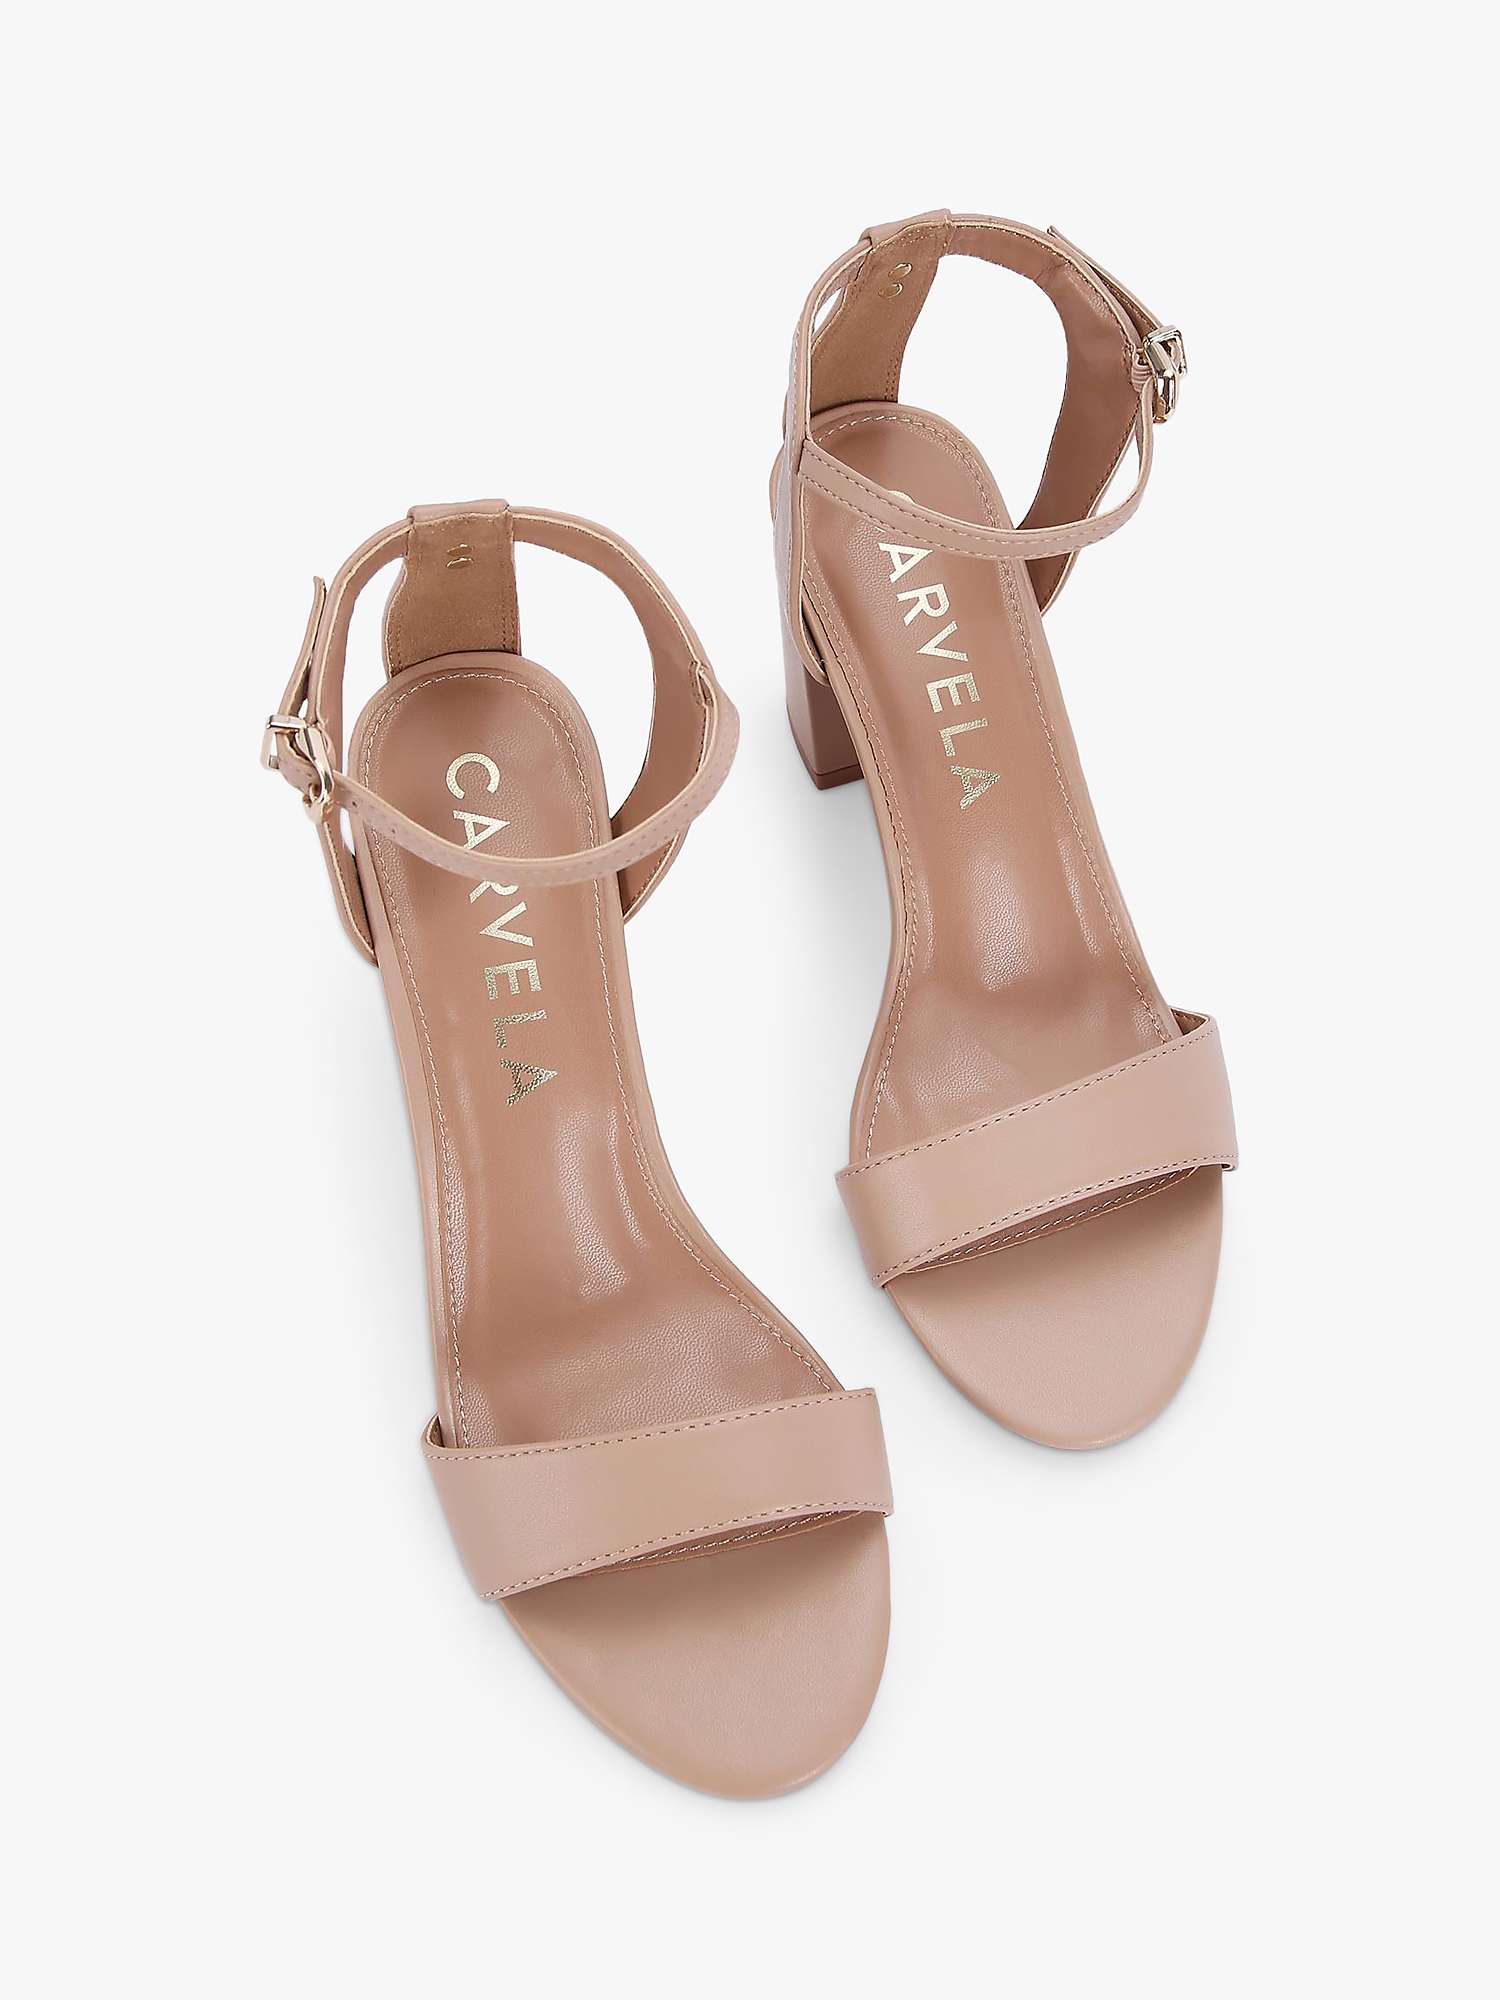 Buy Carvela Kiki Heeled Sandals, Pink Blush Online at johnlewis.com